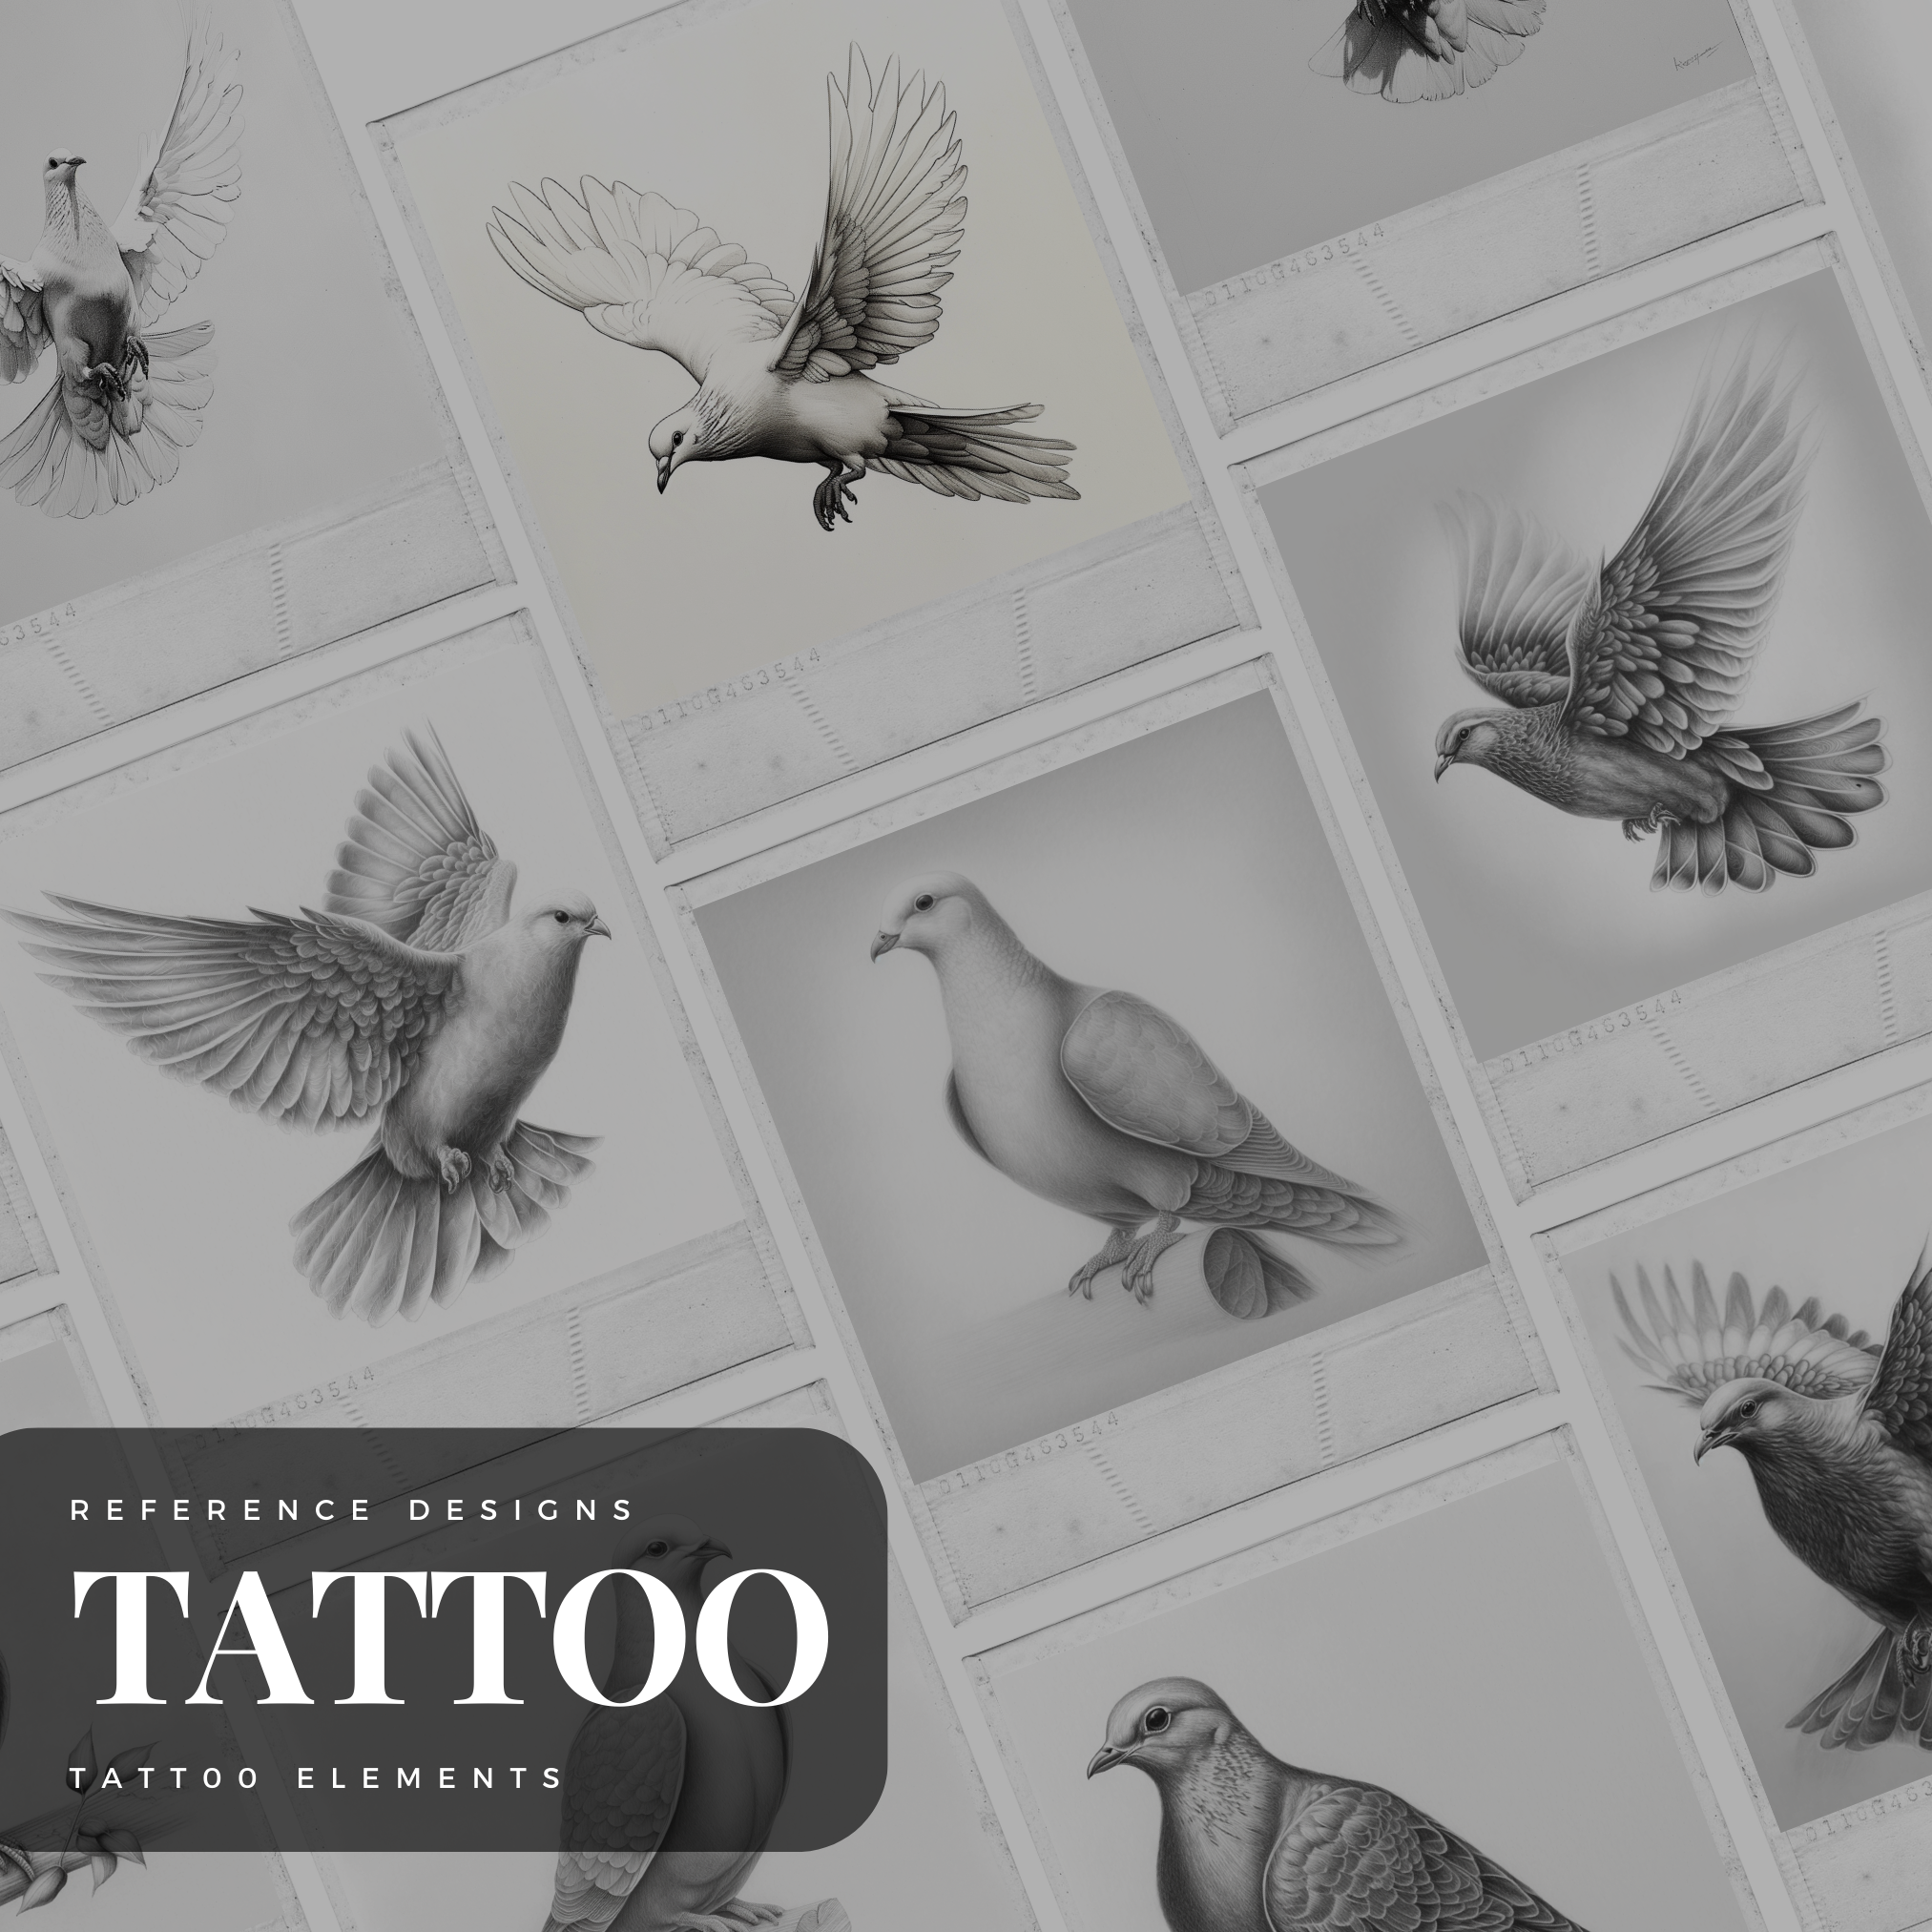 Diamanten Digitale Tattoo-Element-Design-Kollektion: 100 Procreate- und Skizzenbuch-Bilder